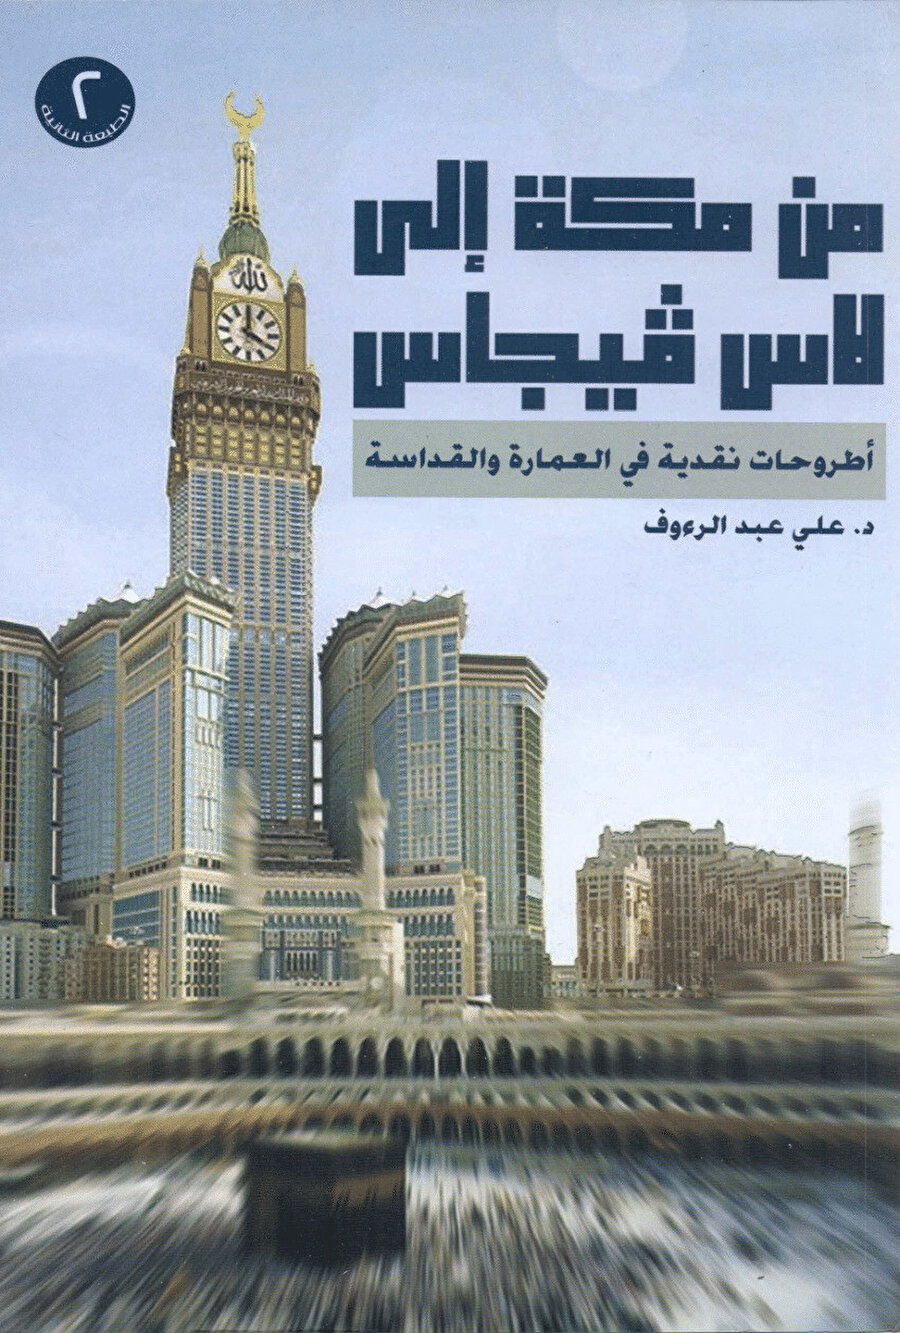 Doktor Abi Abdürraûf tarafından kaleme alınan “Mekke’den Las Vegas’a” başlıklı eser, Mekke’nin modern bir şehir haline getirilirken yapılan hataları ortaya koyan önemli bir kitap olma özelliğine sahip.